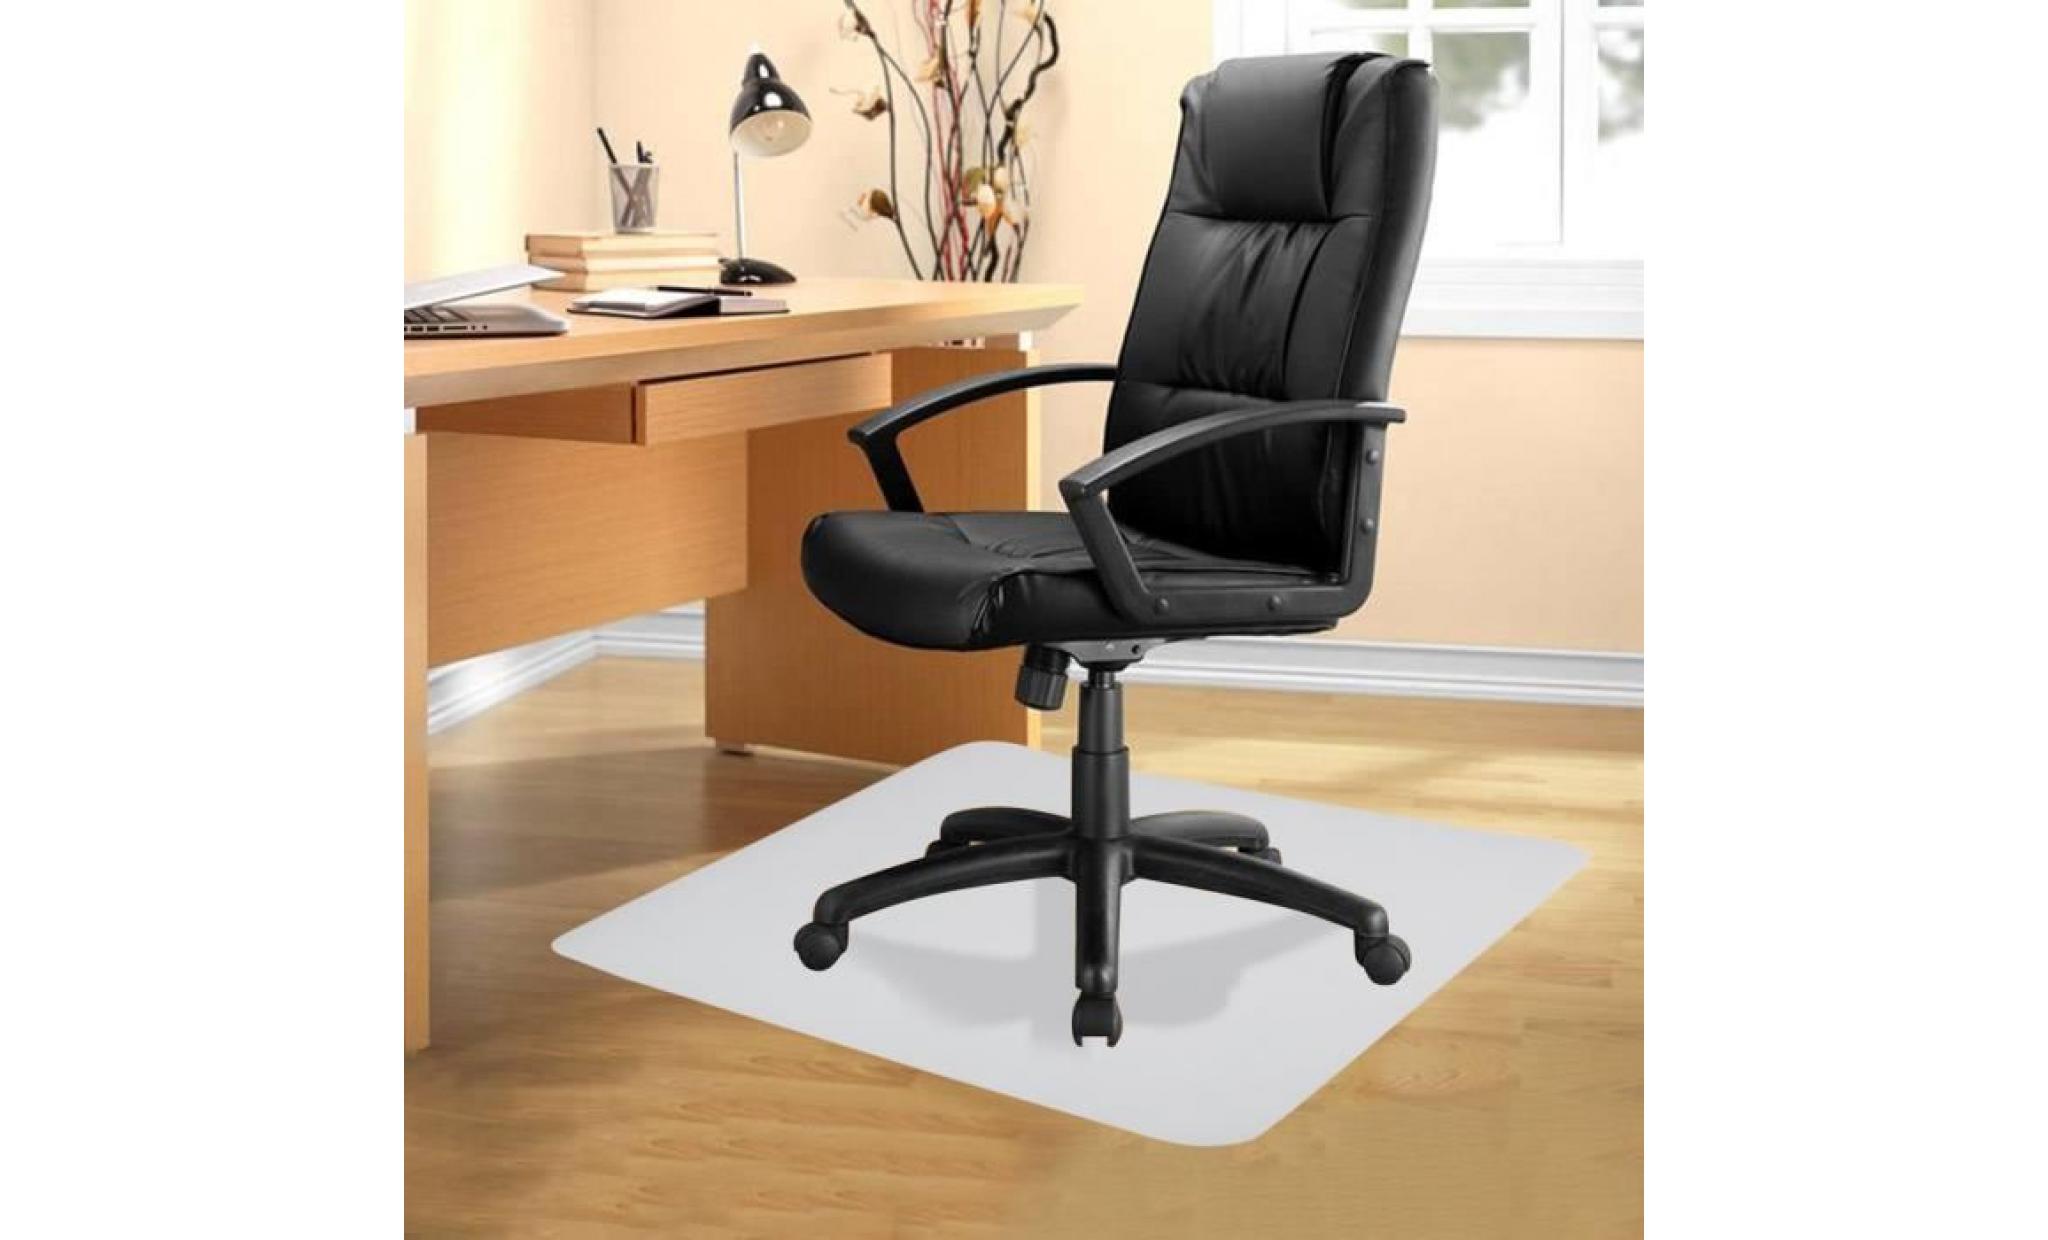 120x150cm coussin de chaise tapis de protection de sol antidérapant bureau à domicile ordinateur de bureau chaise de travail